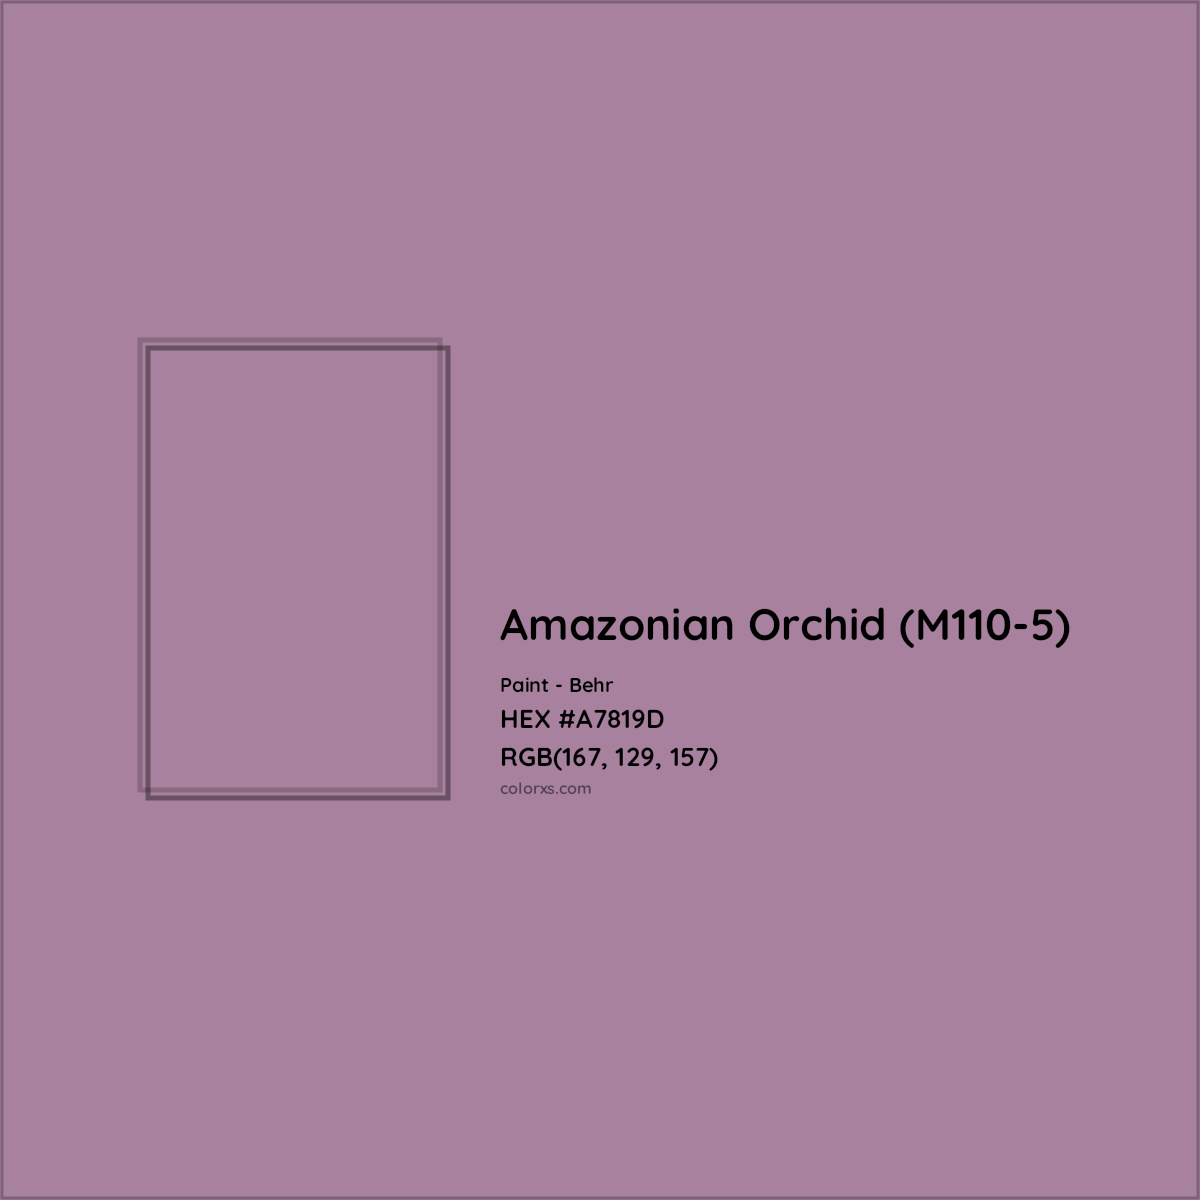 HEX #A7819D Amazonian Orchid (M110-5) Paint Behr - Color Code